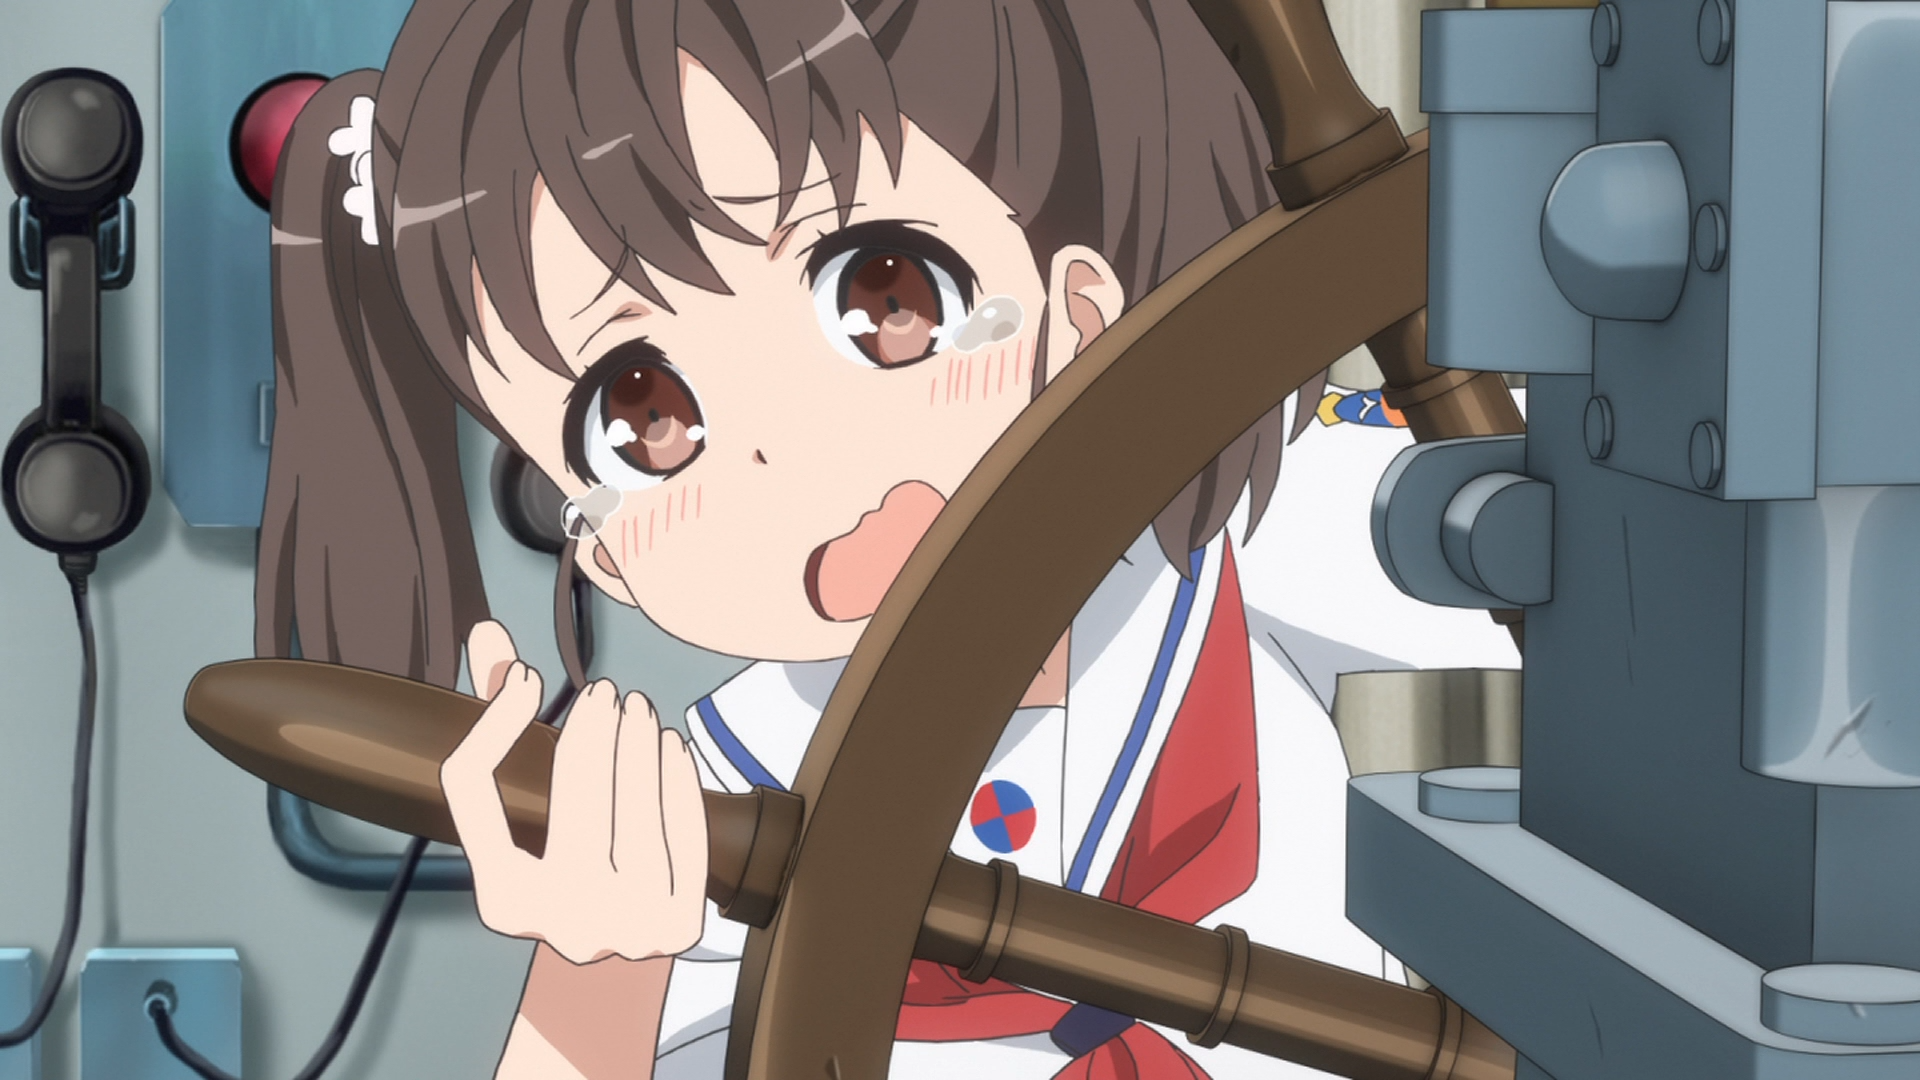 La estudiante de secundaria Rin Shiretoko se pone ansiosamente a cargo del barco destructor Harekaze en una escena del anime de televisión High School Fleet de 2016.